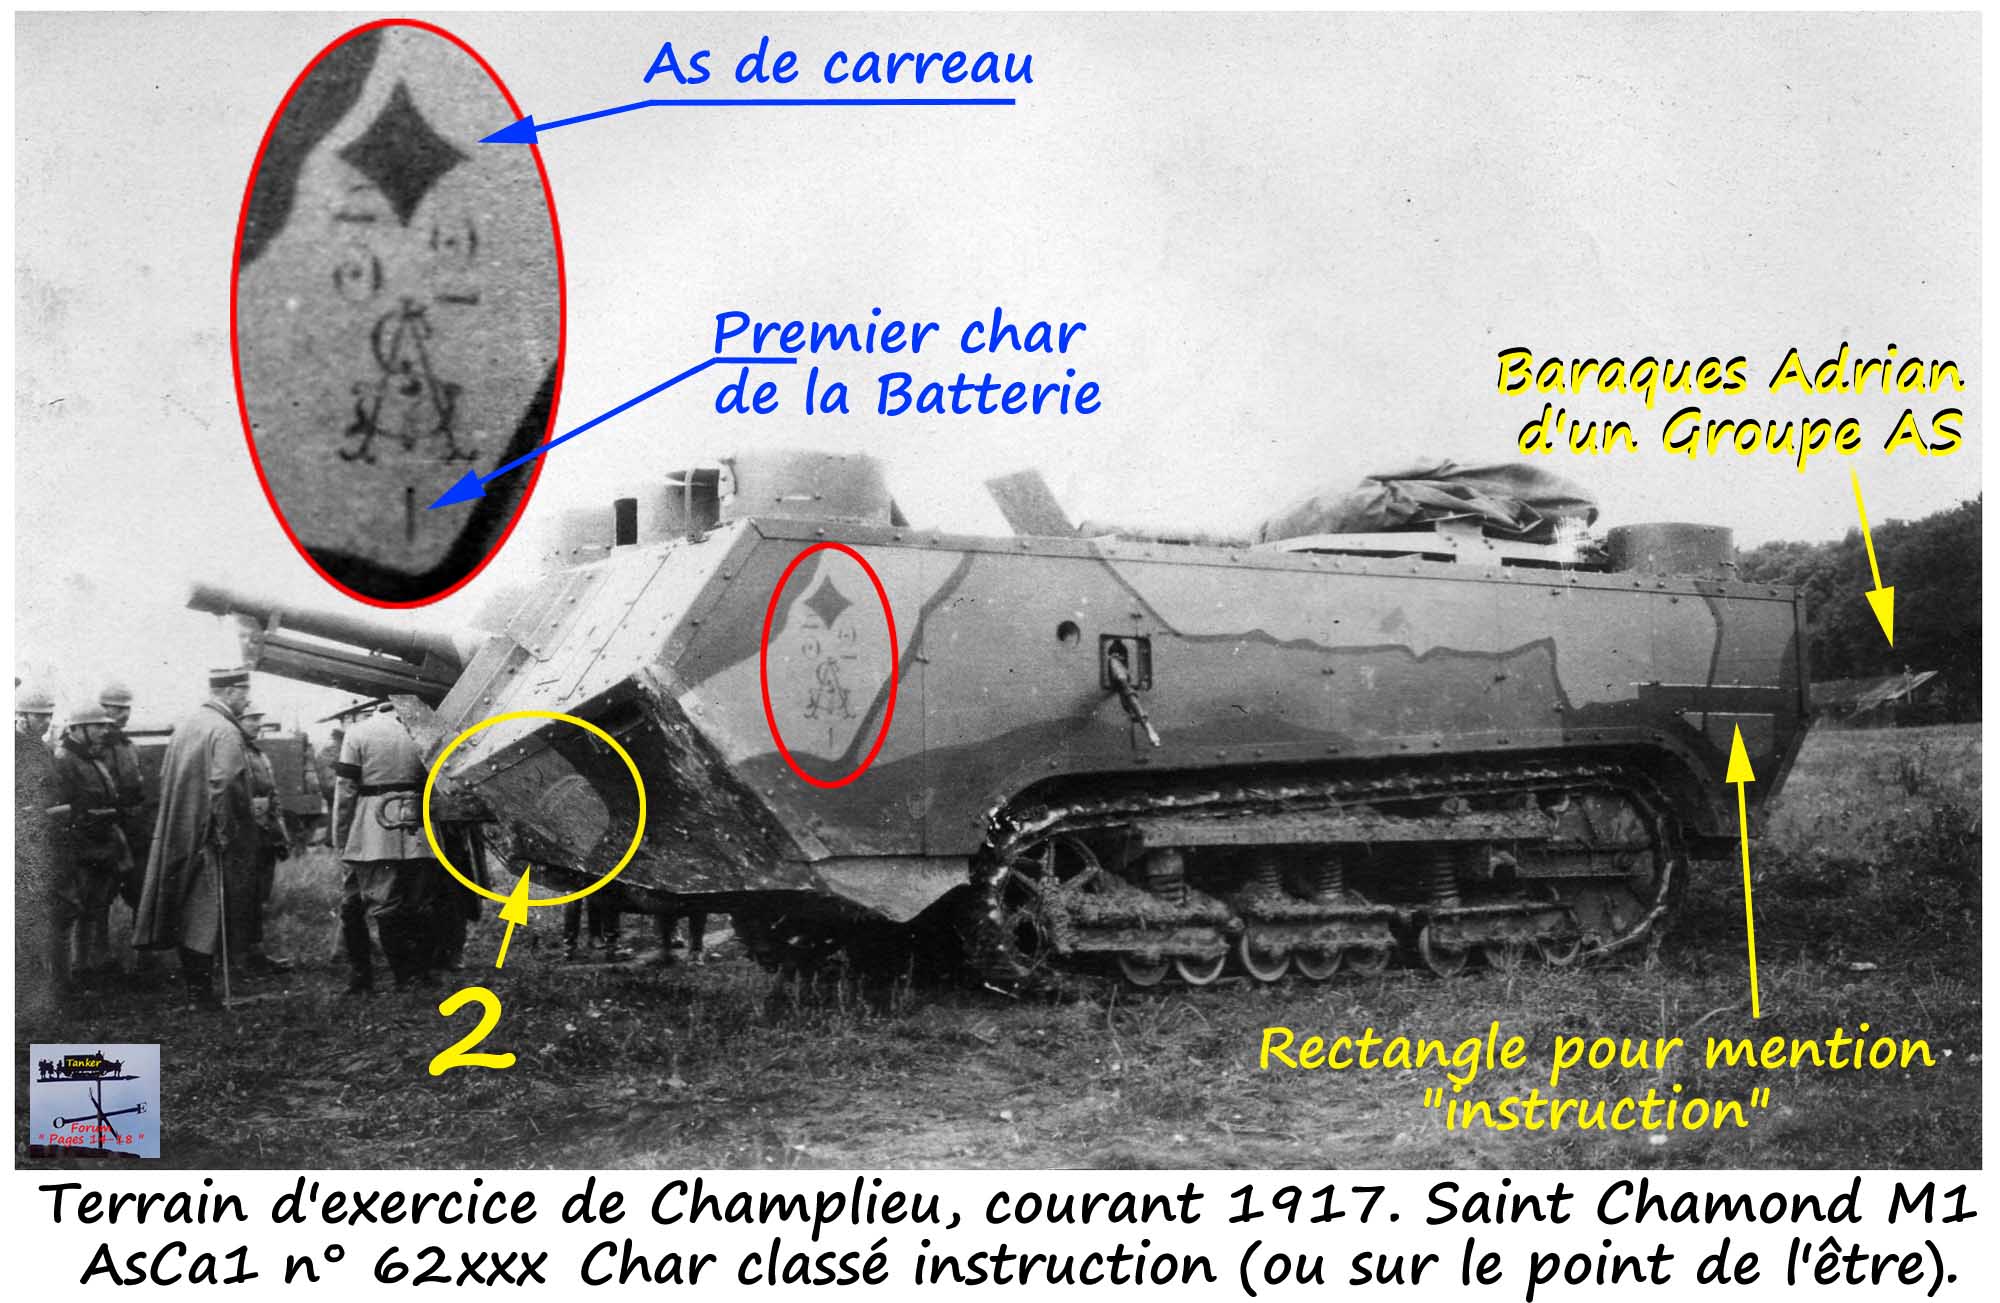 01a - I - AS 32 - St Chamond M1 AsCa1 n° 61xxx.jpg